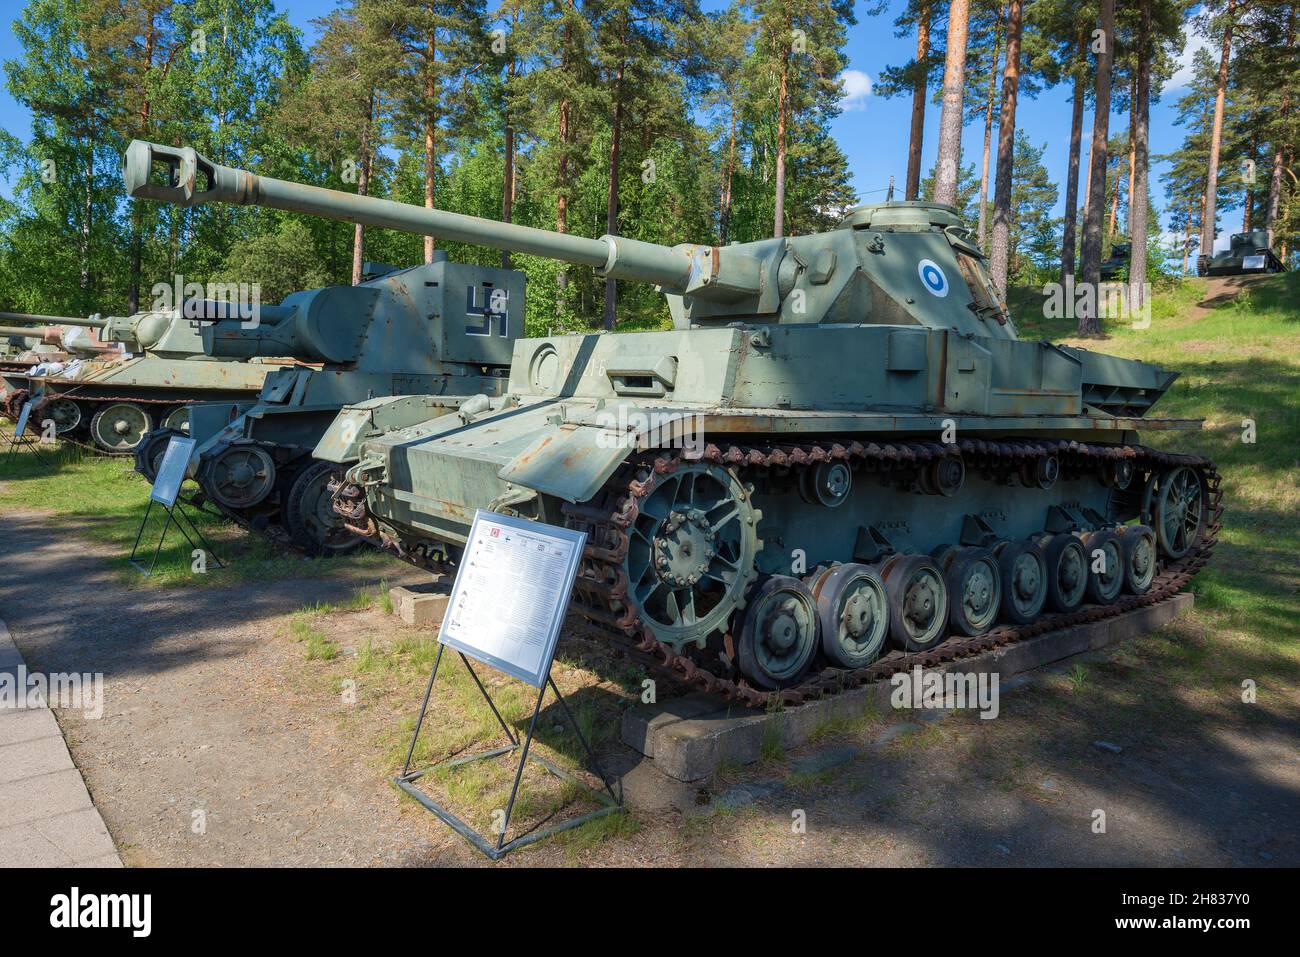 PAROLA, FINLANDIA - 17 GIUGNO 2017: Medio serbatoio tedesco PzKpfw IV Ausf.J il serbatoio più massiccio della seconda guerra mondiale nel museo dei carri armati Foto Stock